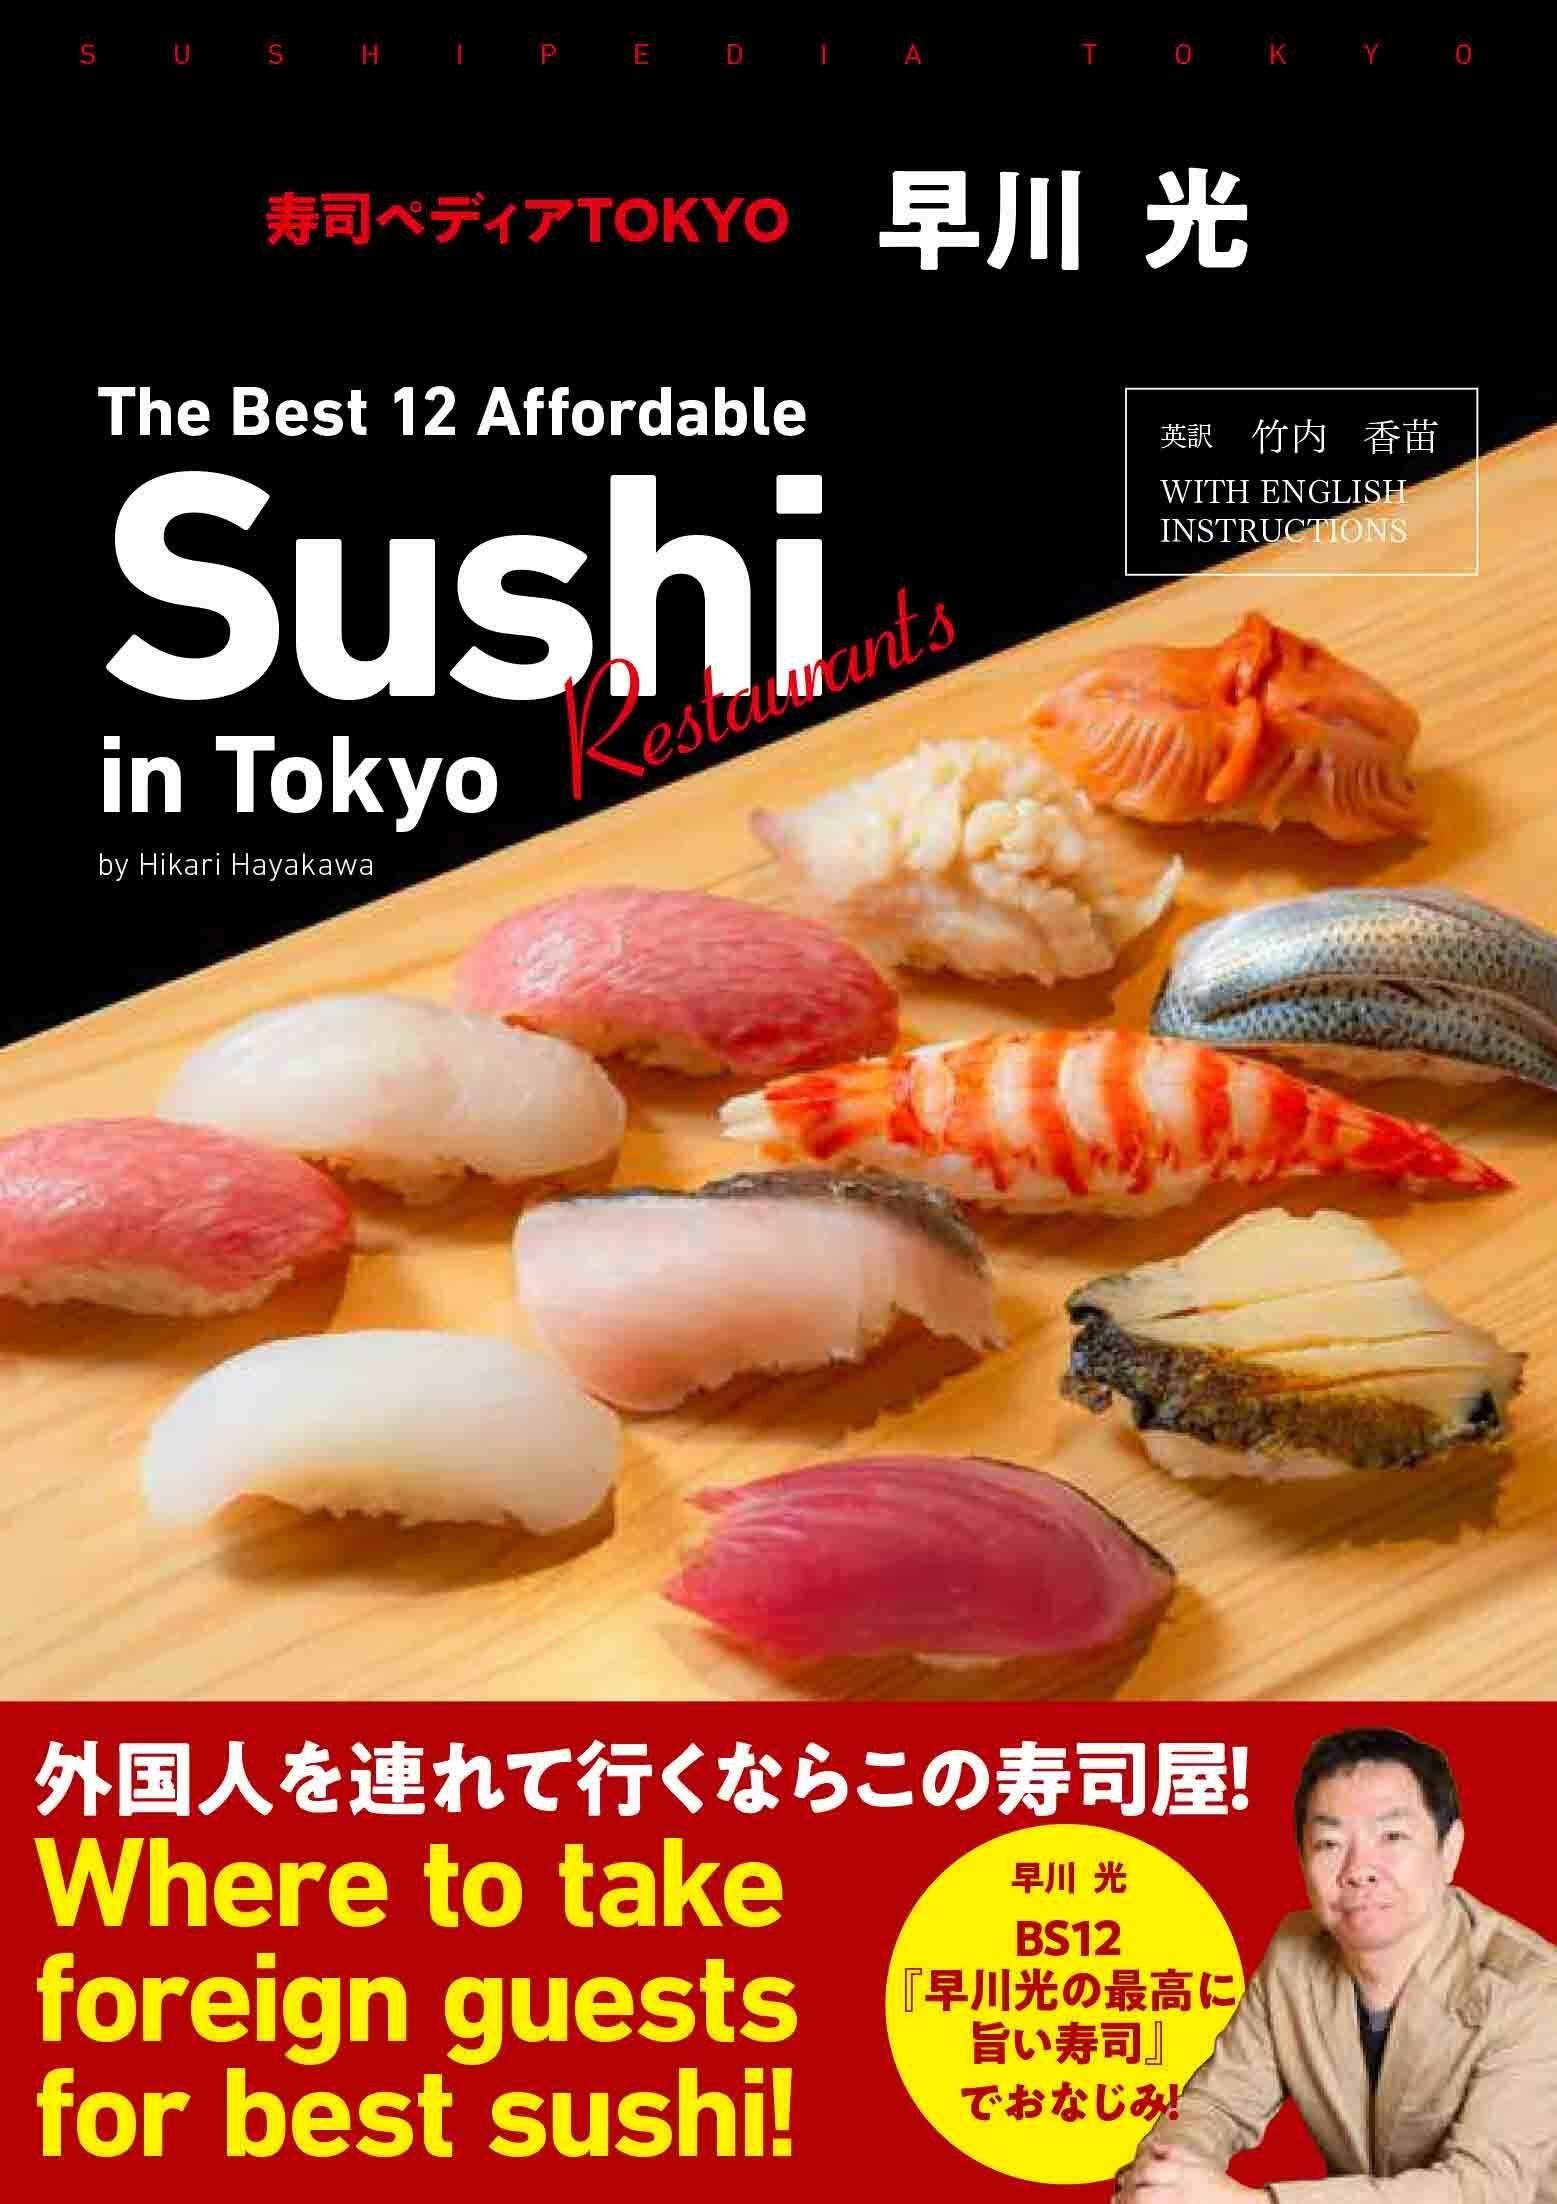 ?司ペディアTOKYO ~ The Best 12 Affordable Sushi Restaurants in Tokyo by Hikari Hayakawa ~